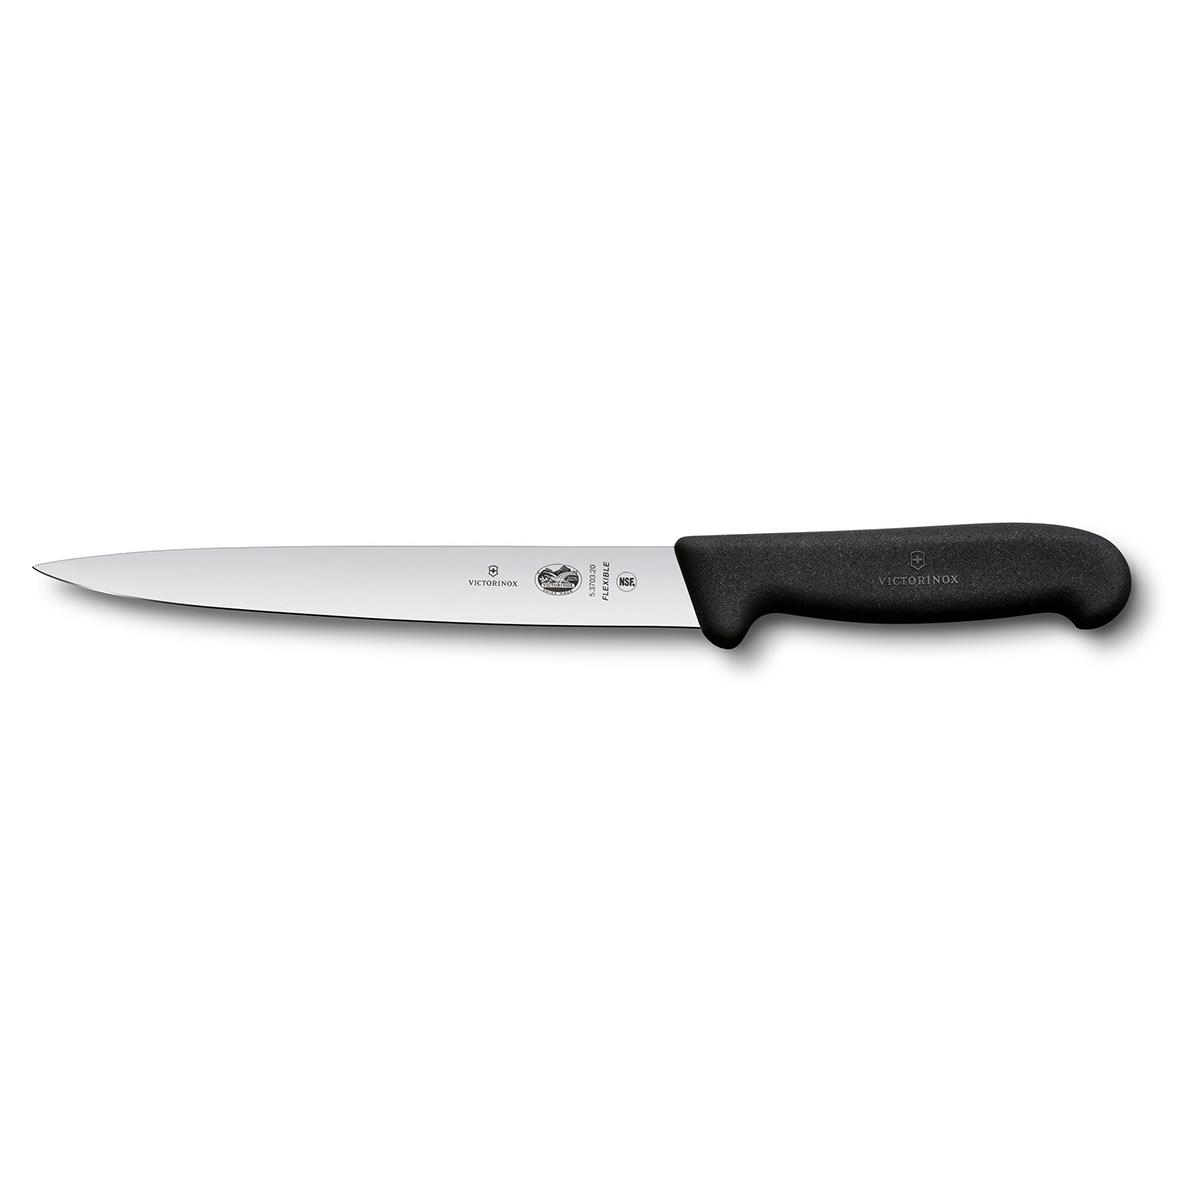 Kniv Victorinox Kockkniv Flexible Fibrox svart 200 mm 64590112